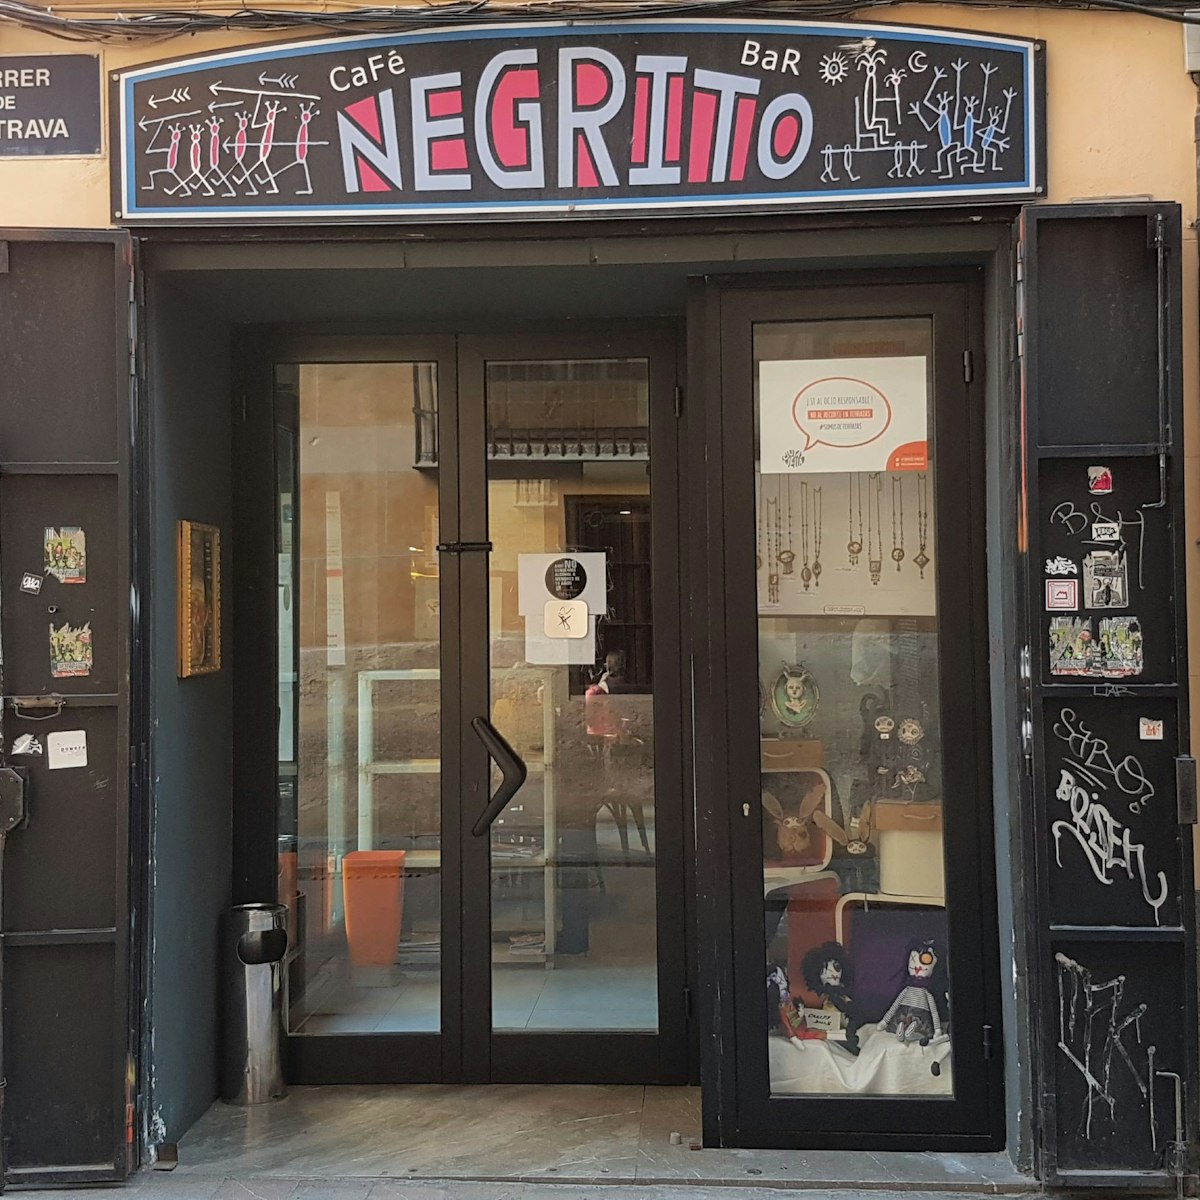 Entrance to Café Negrito.